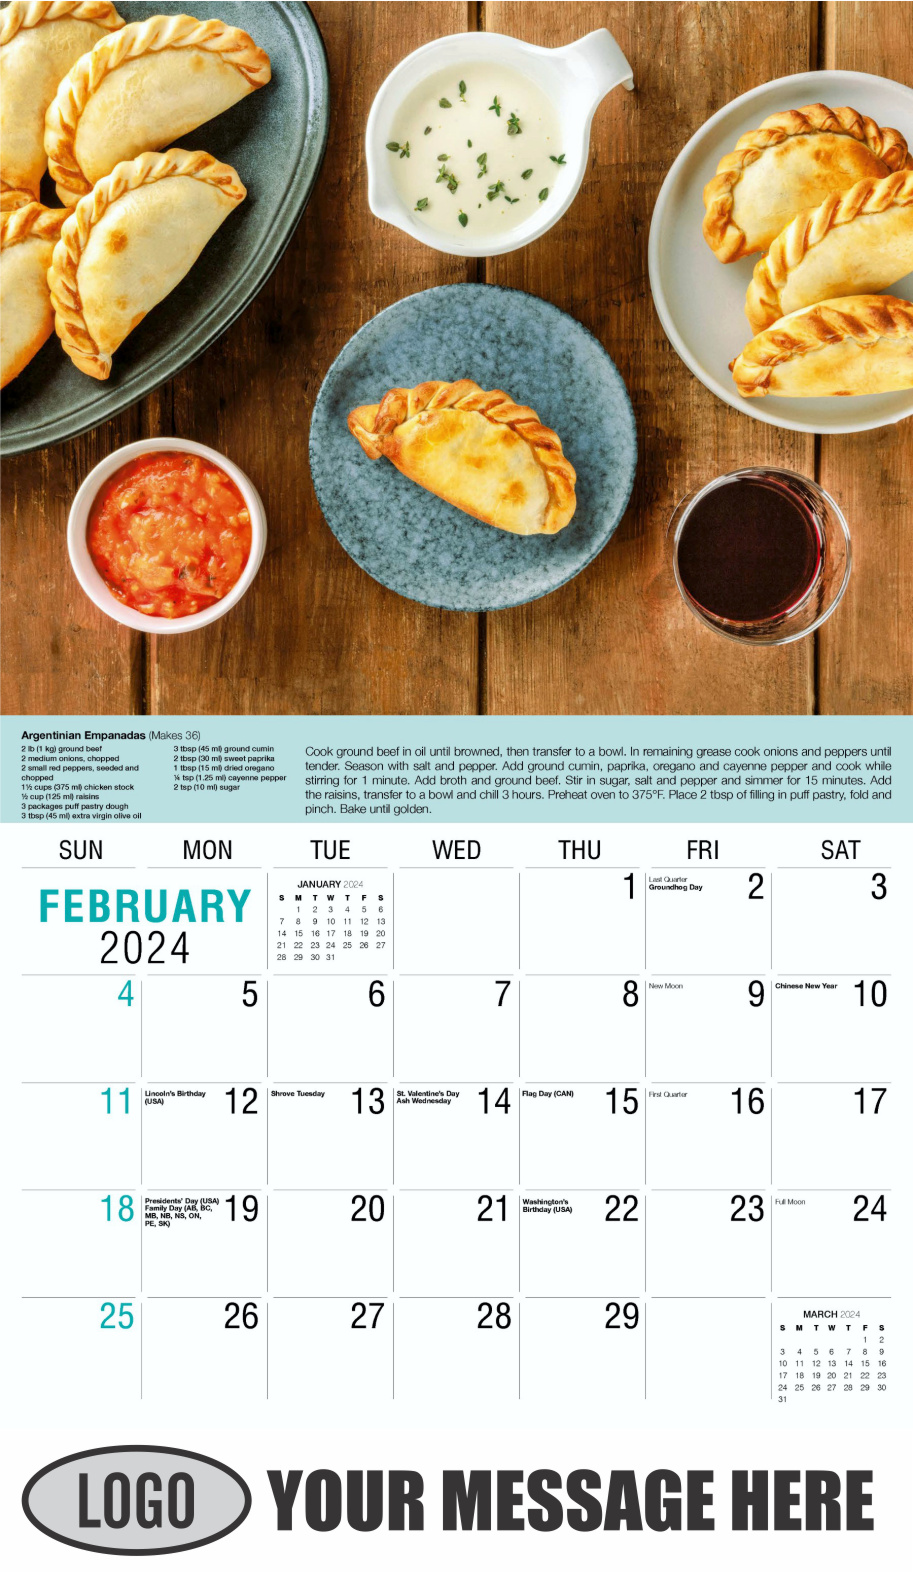 Recipes 2024 Business Promotional Calendar - February